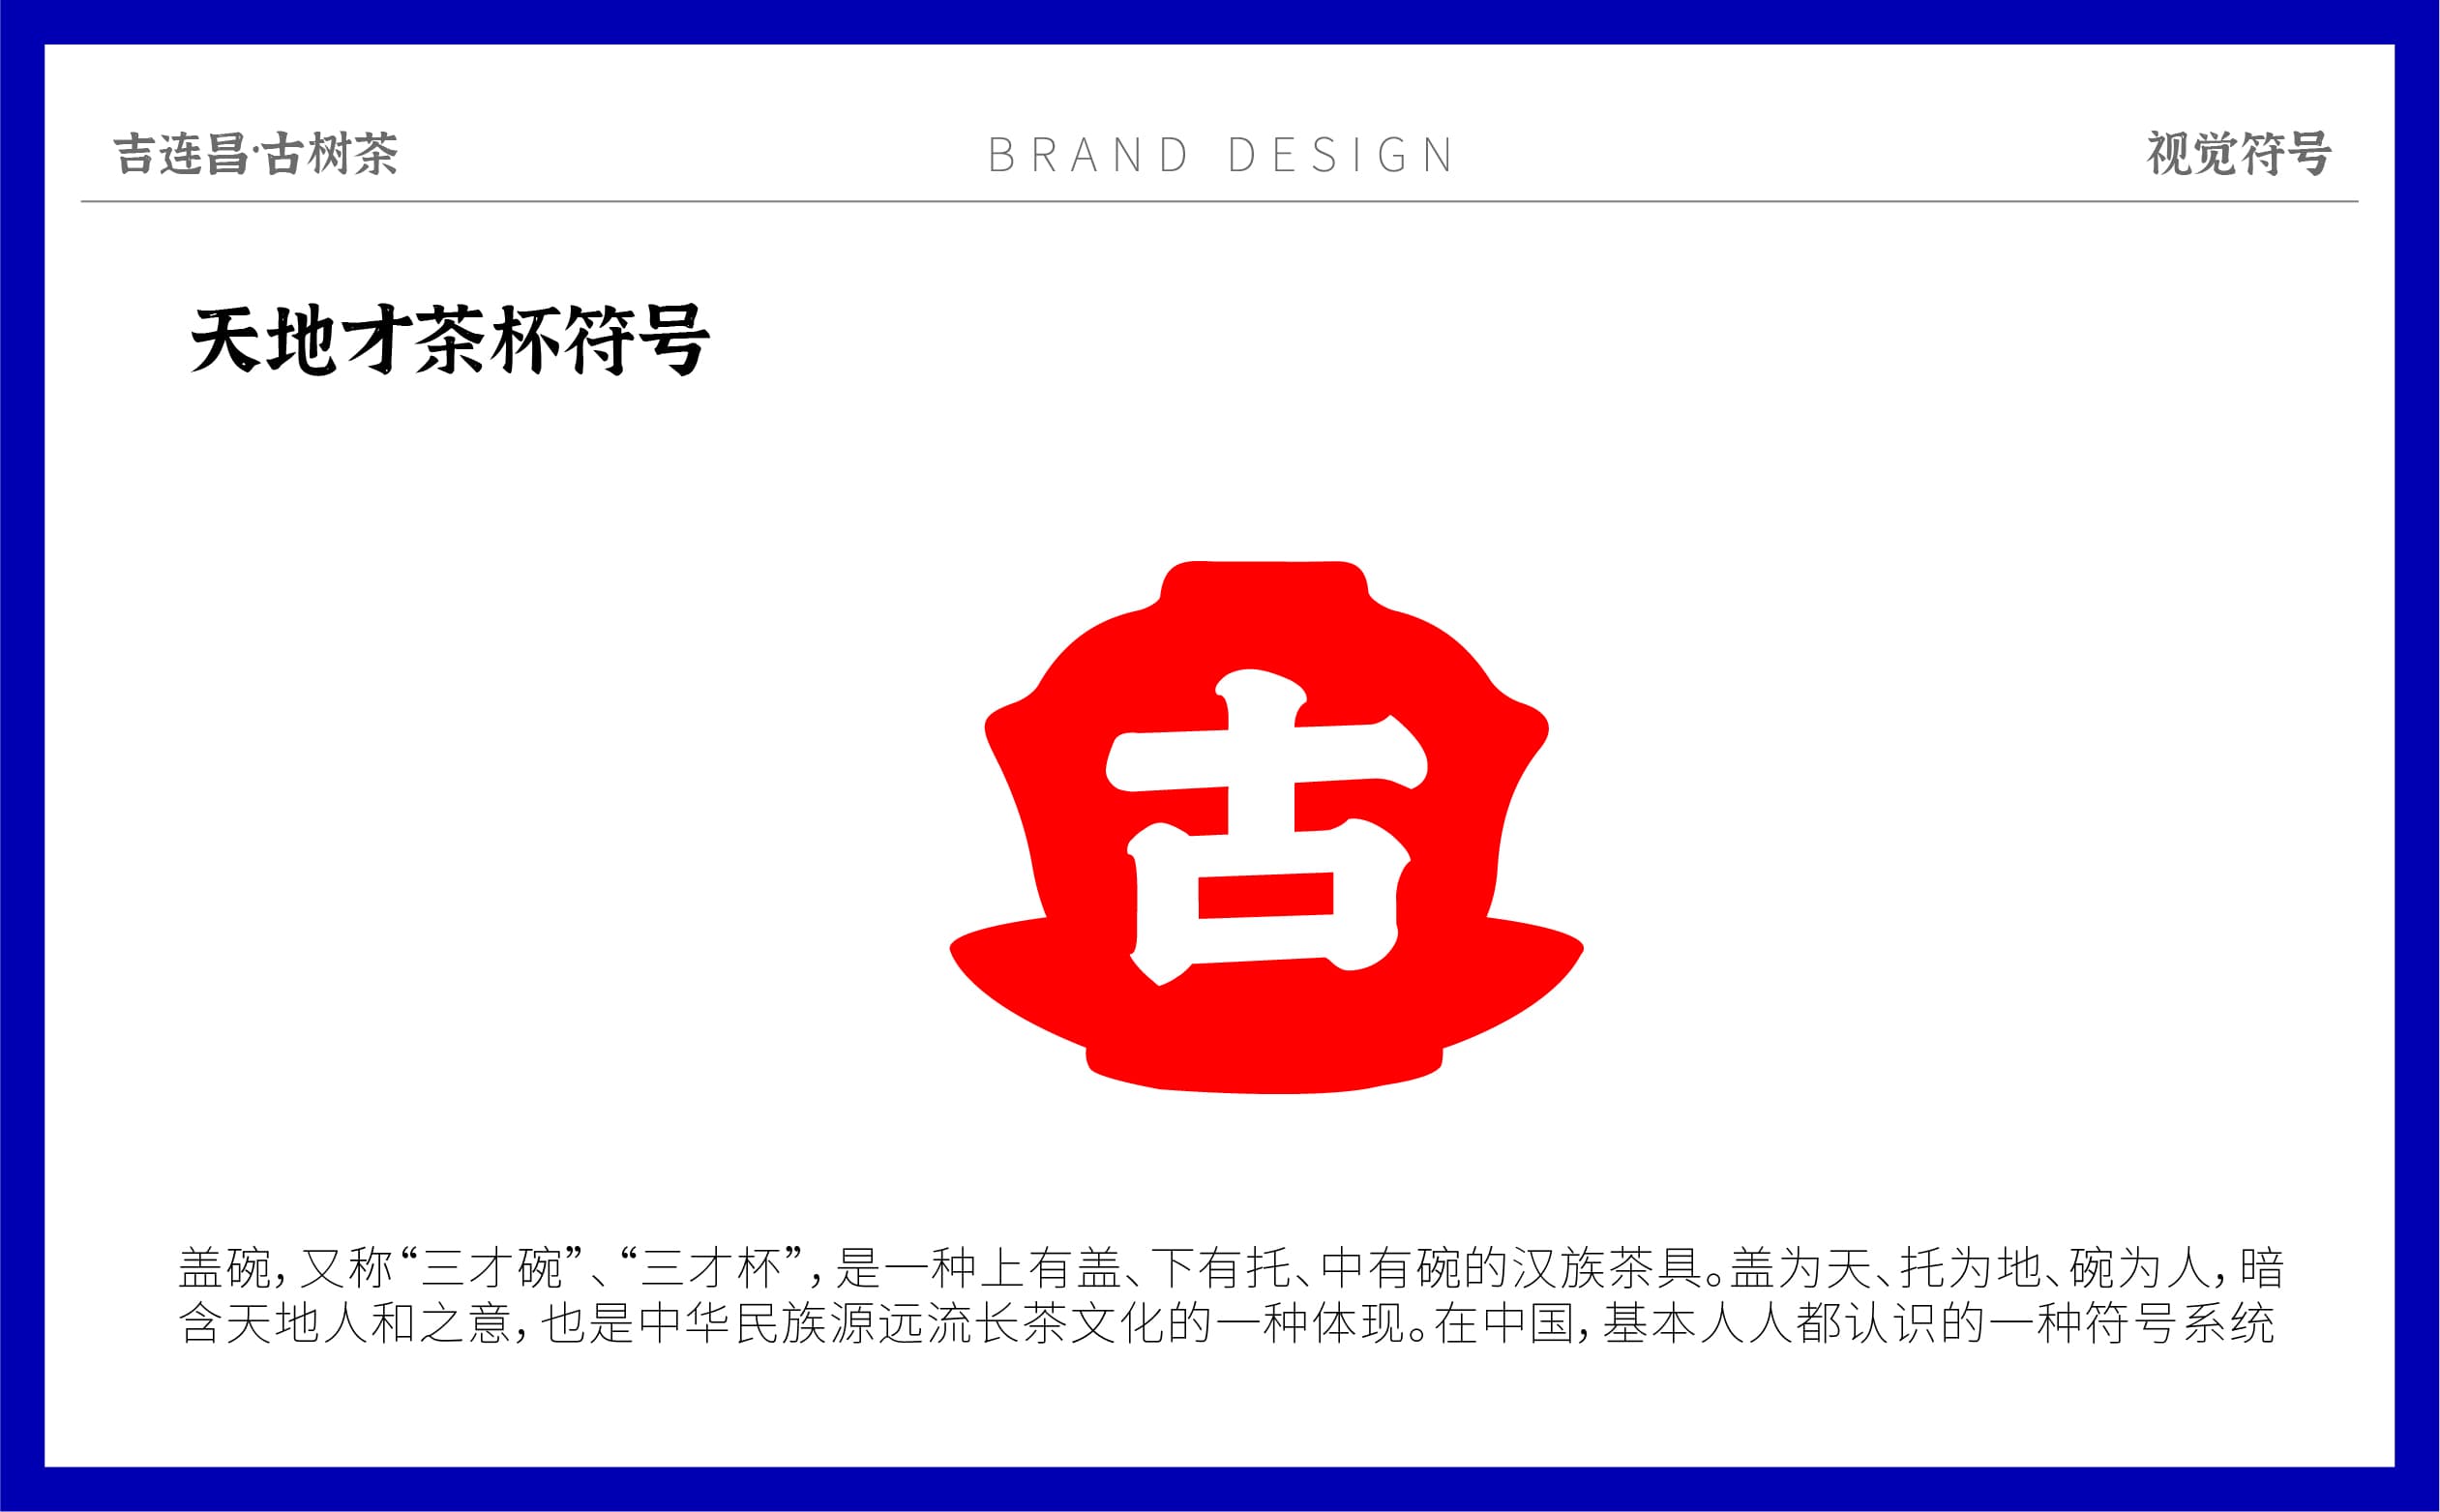 吉连昌品牌形象设计_画板 1 副本 10.jpg